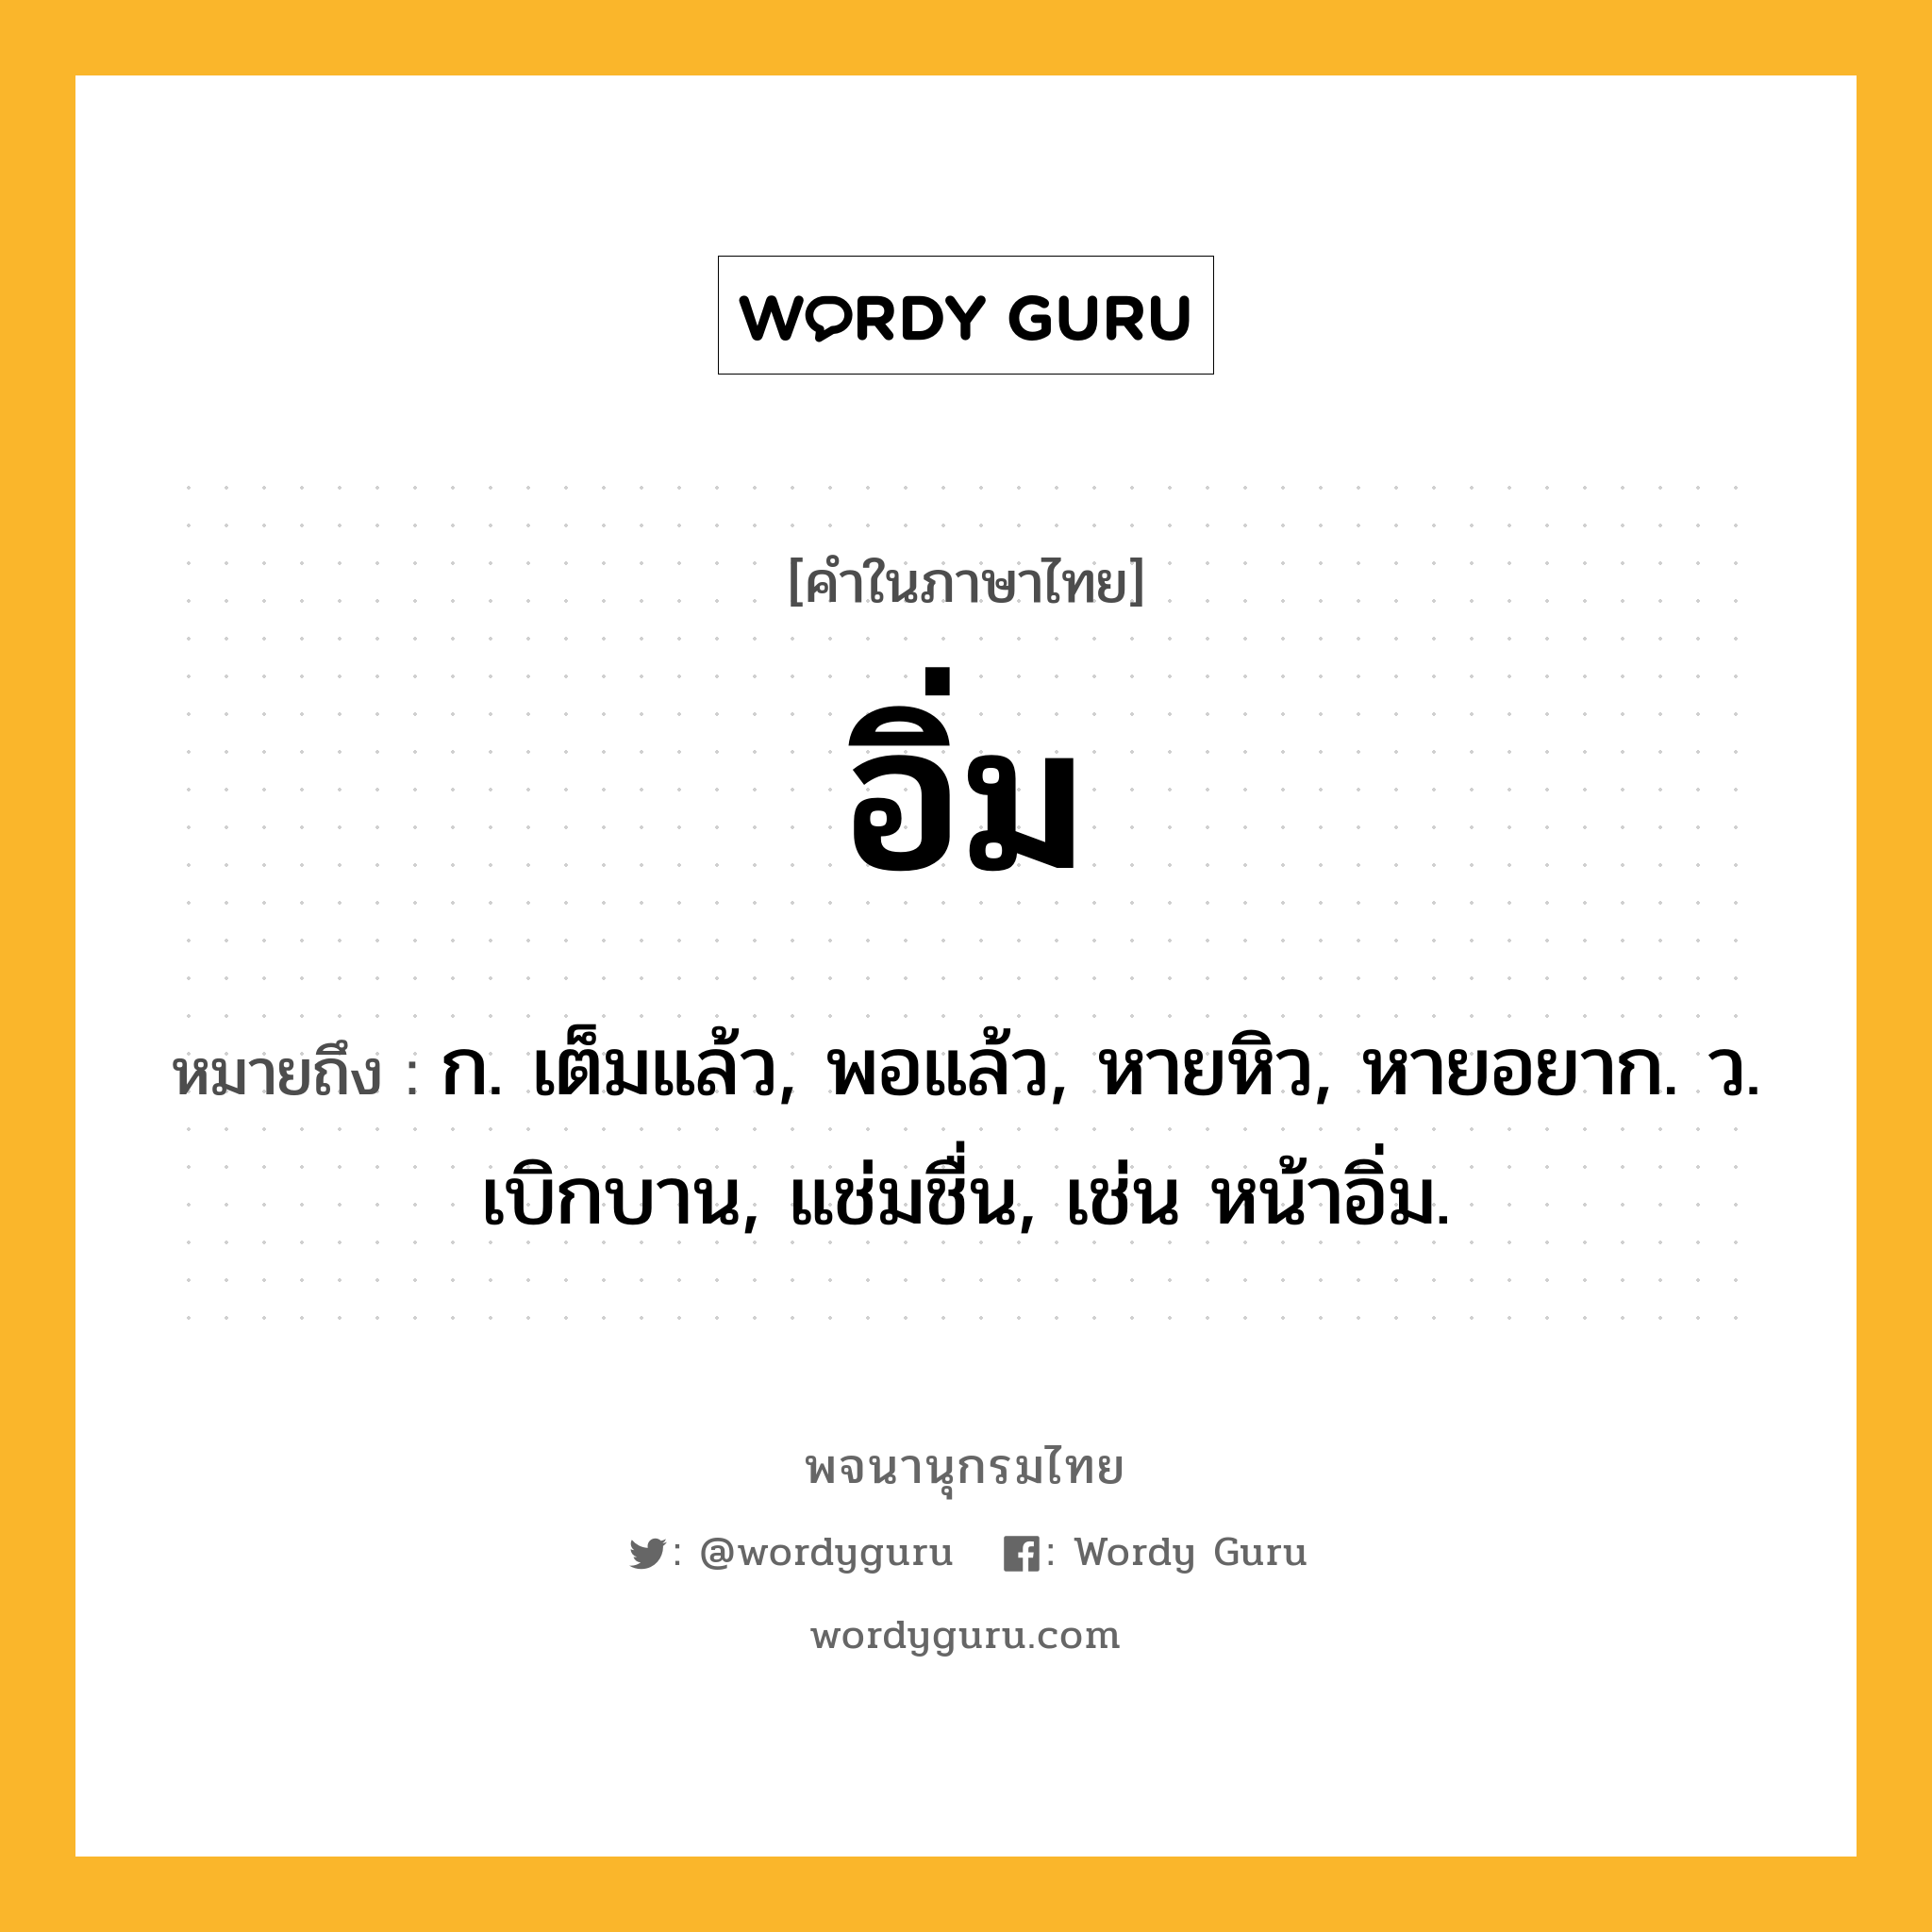 อิ่ม ความหมาย หมายถึงอะไร?, คำในภาษาไทย อิ่ม หมายถึง ก. เต็มแล้ว, พอแล้ว, หายหิว, หายอยาก. ว. เบิกบาน, แช่มชื่น, เช่น หน้าอิ่ม.